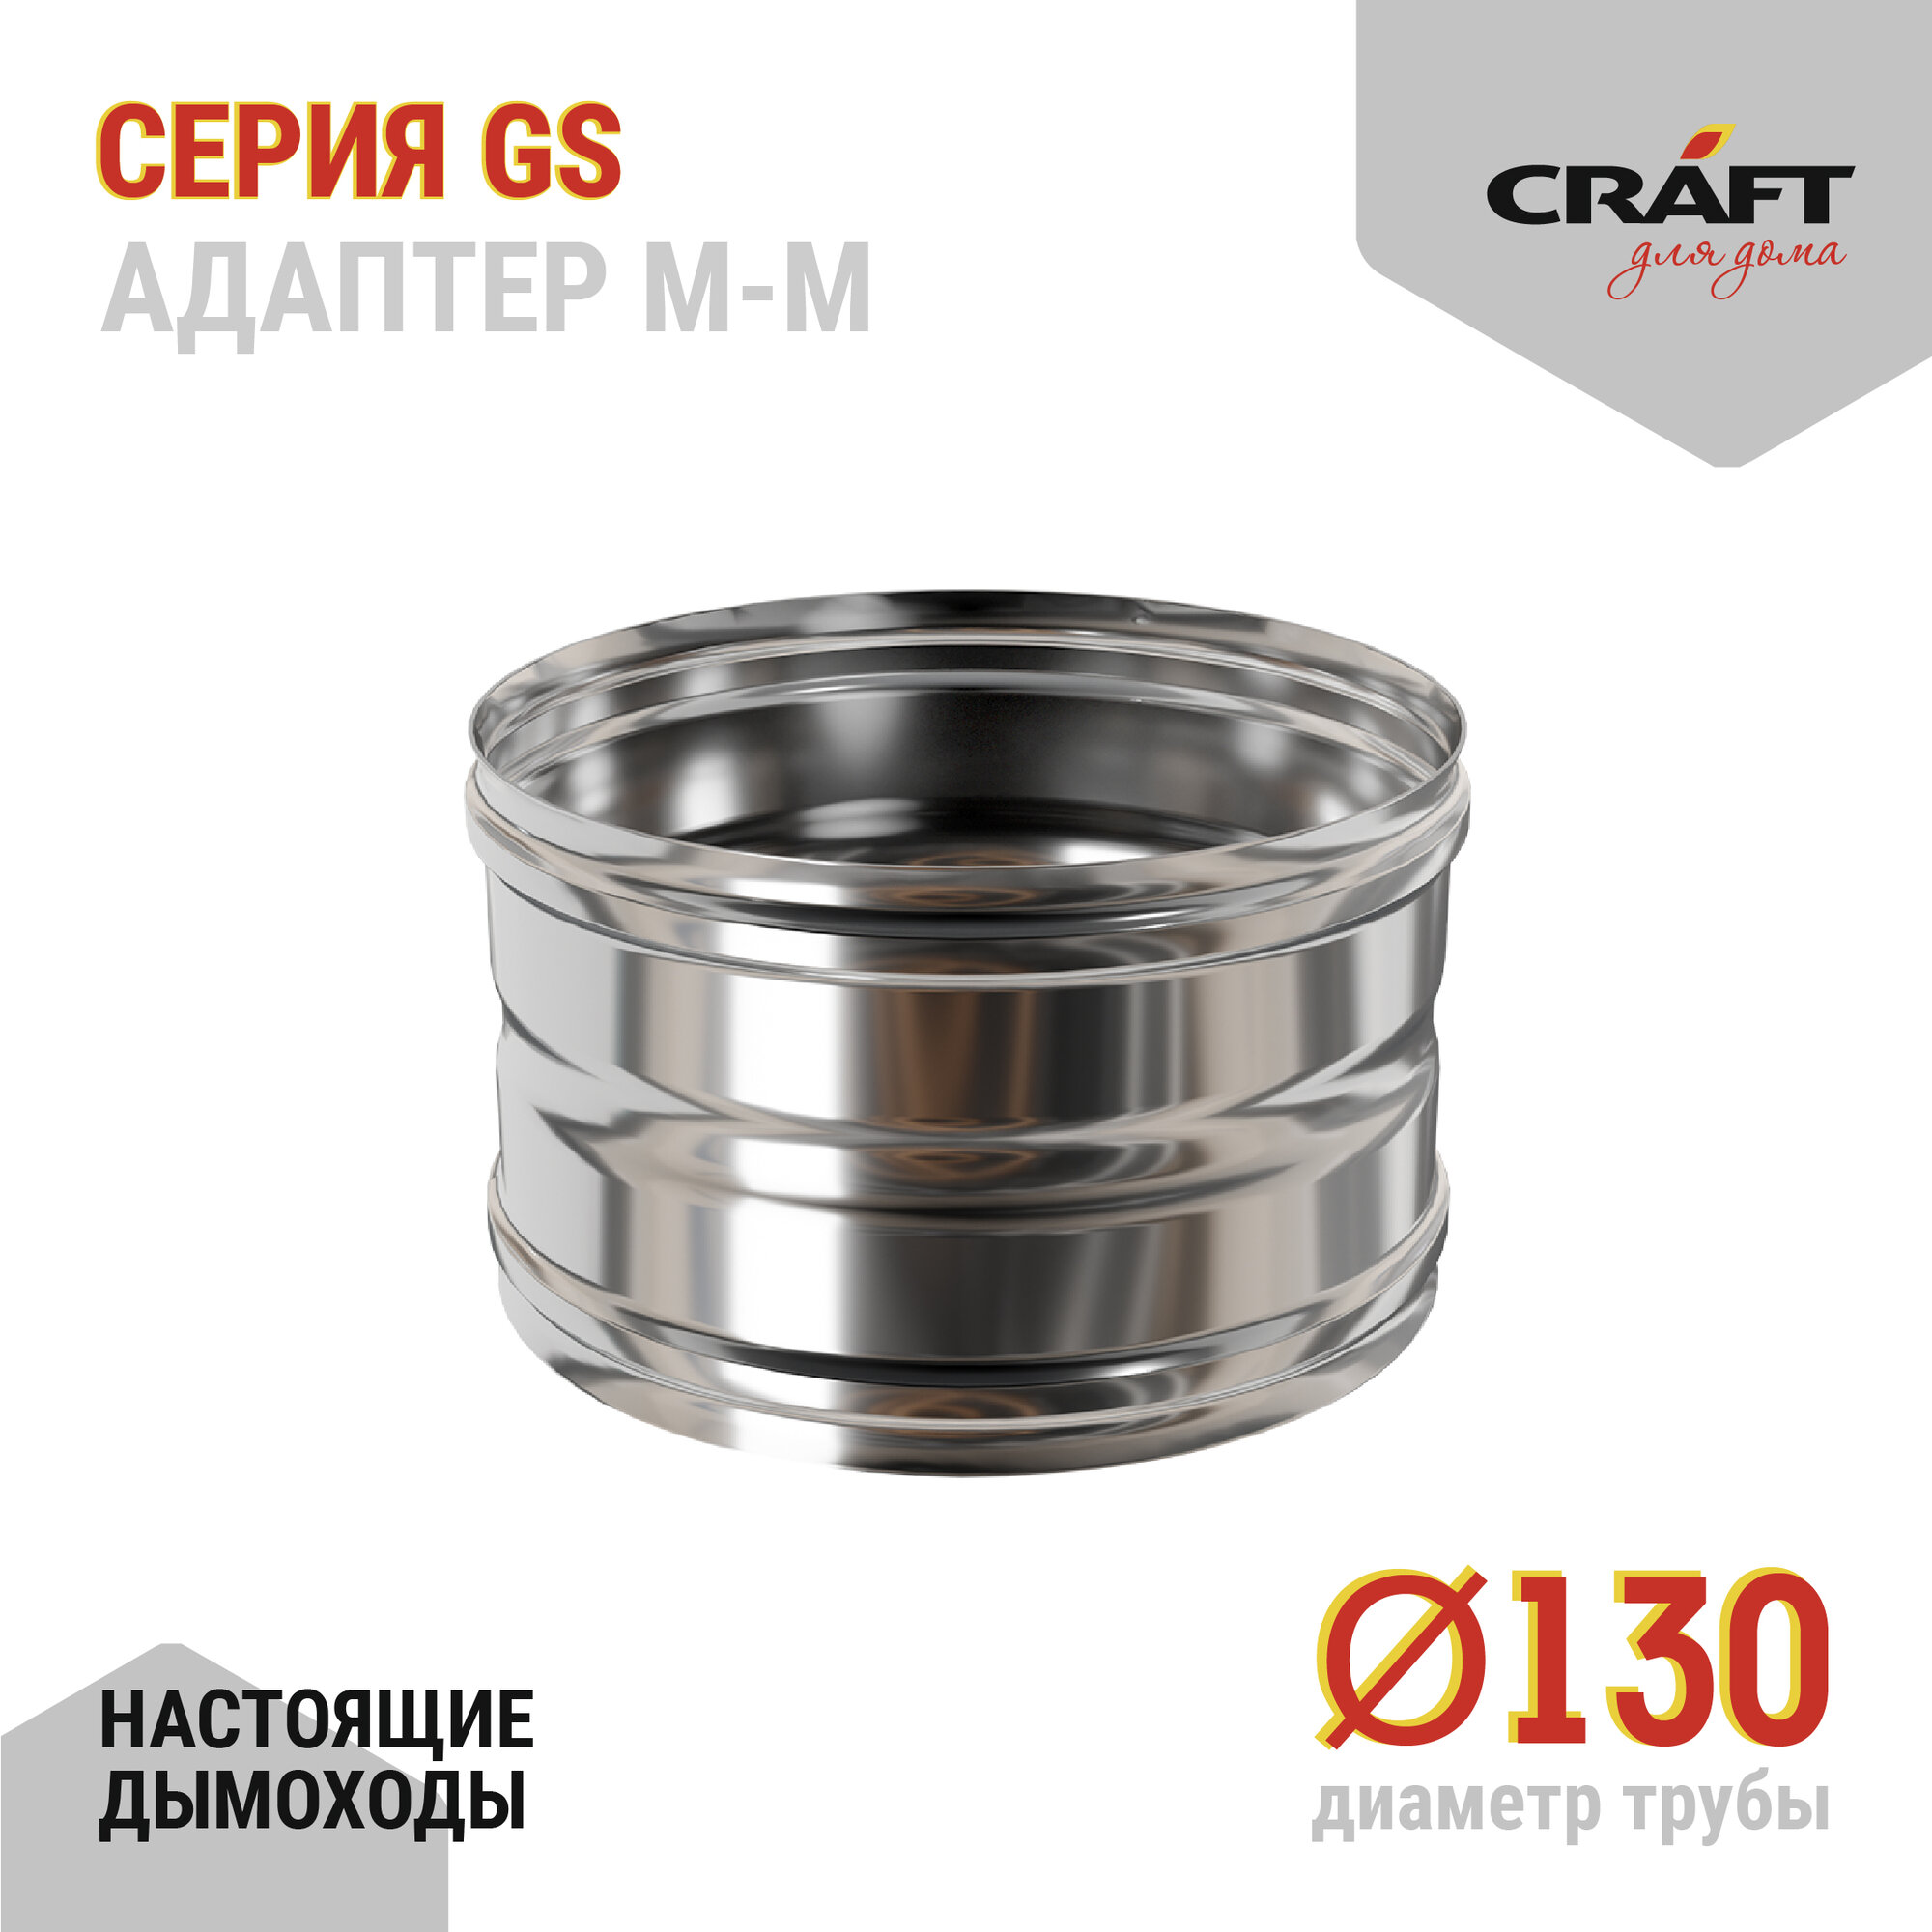 Craft GS адаптер котла ММ (316/05) Ф130